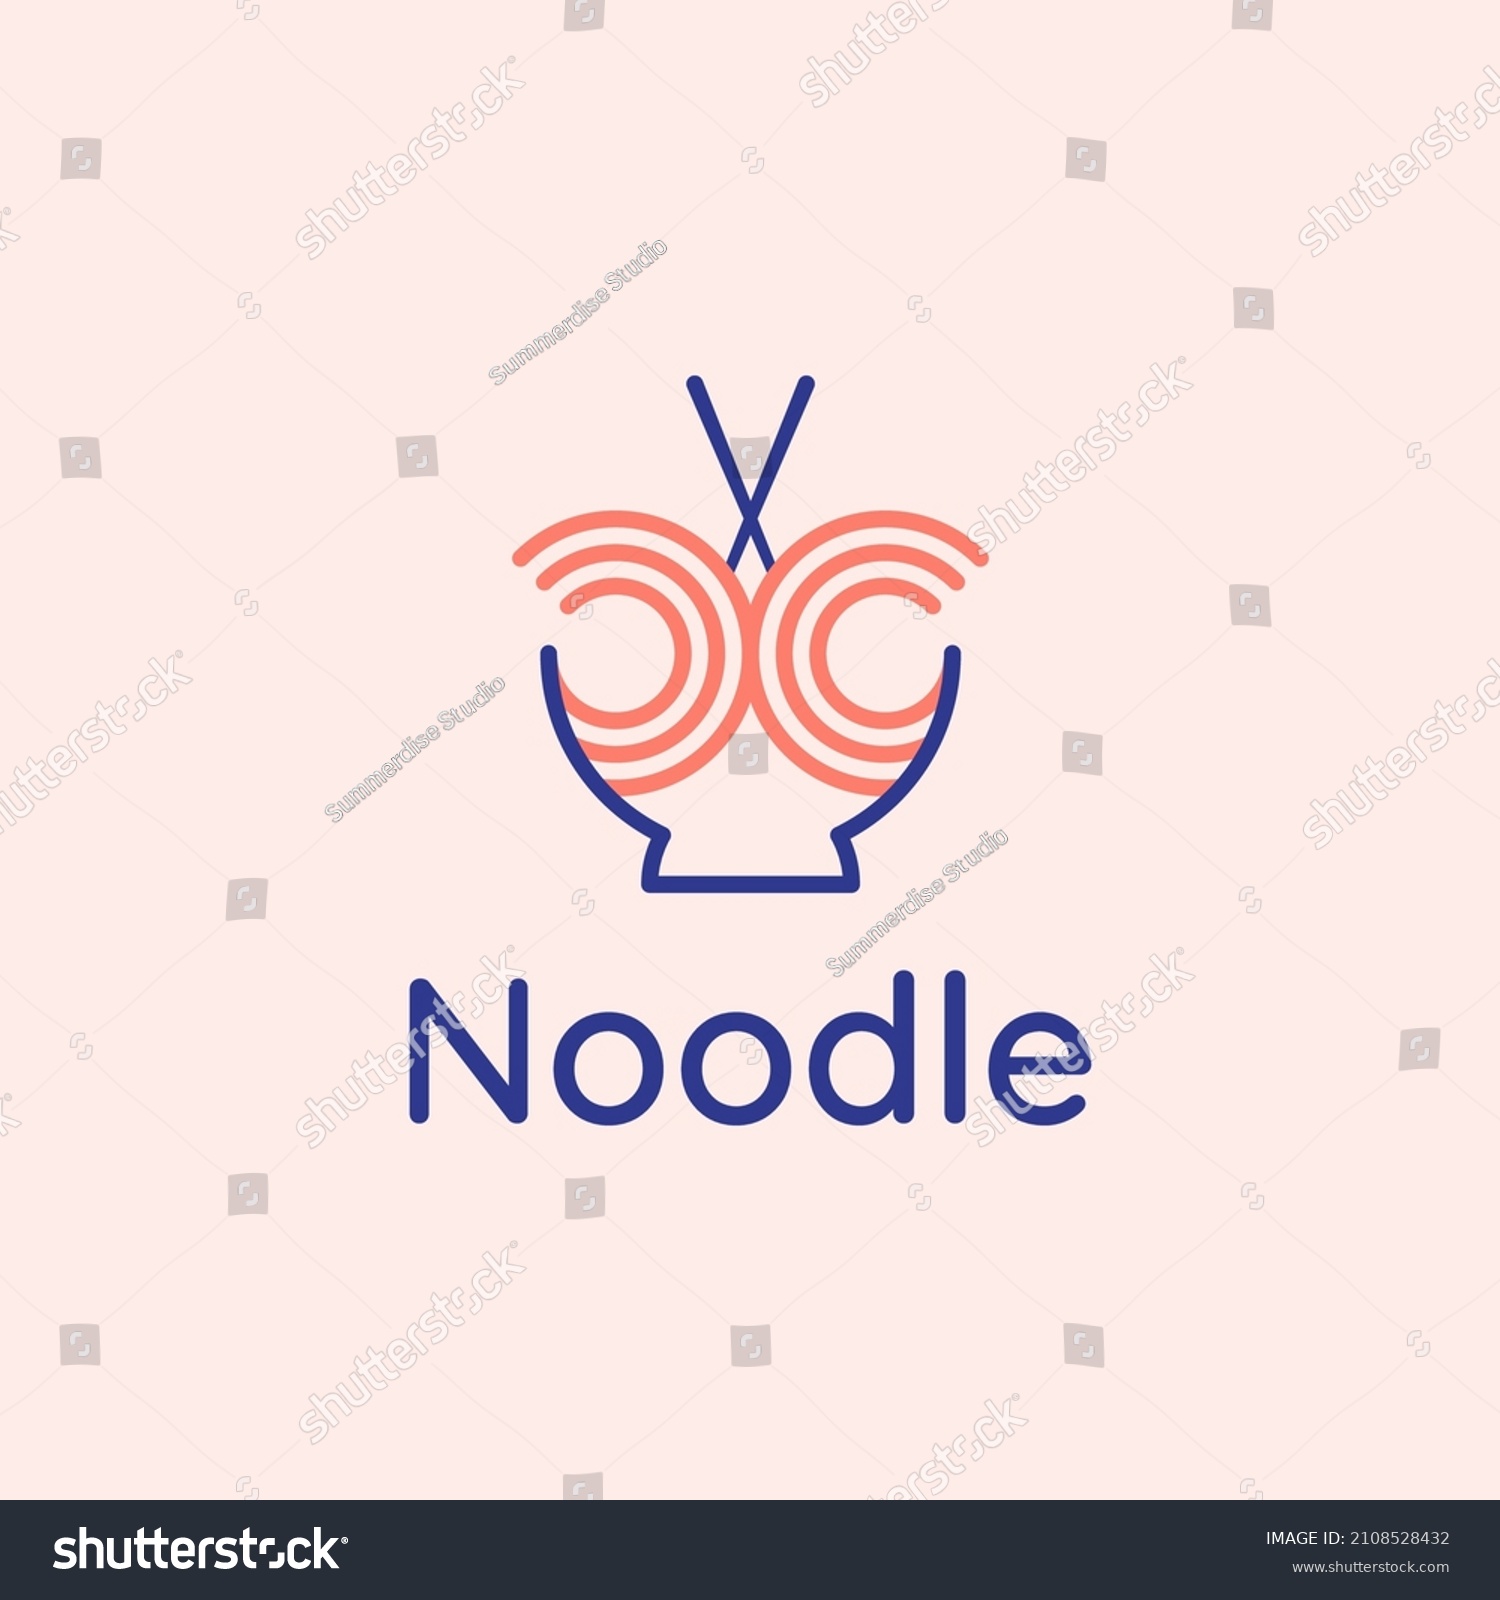 SVG of noodle food line logo with bowl and chopsticks
 svg